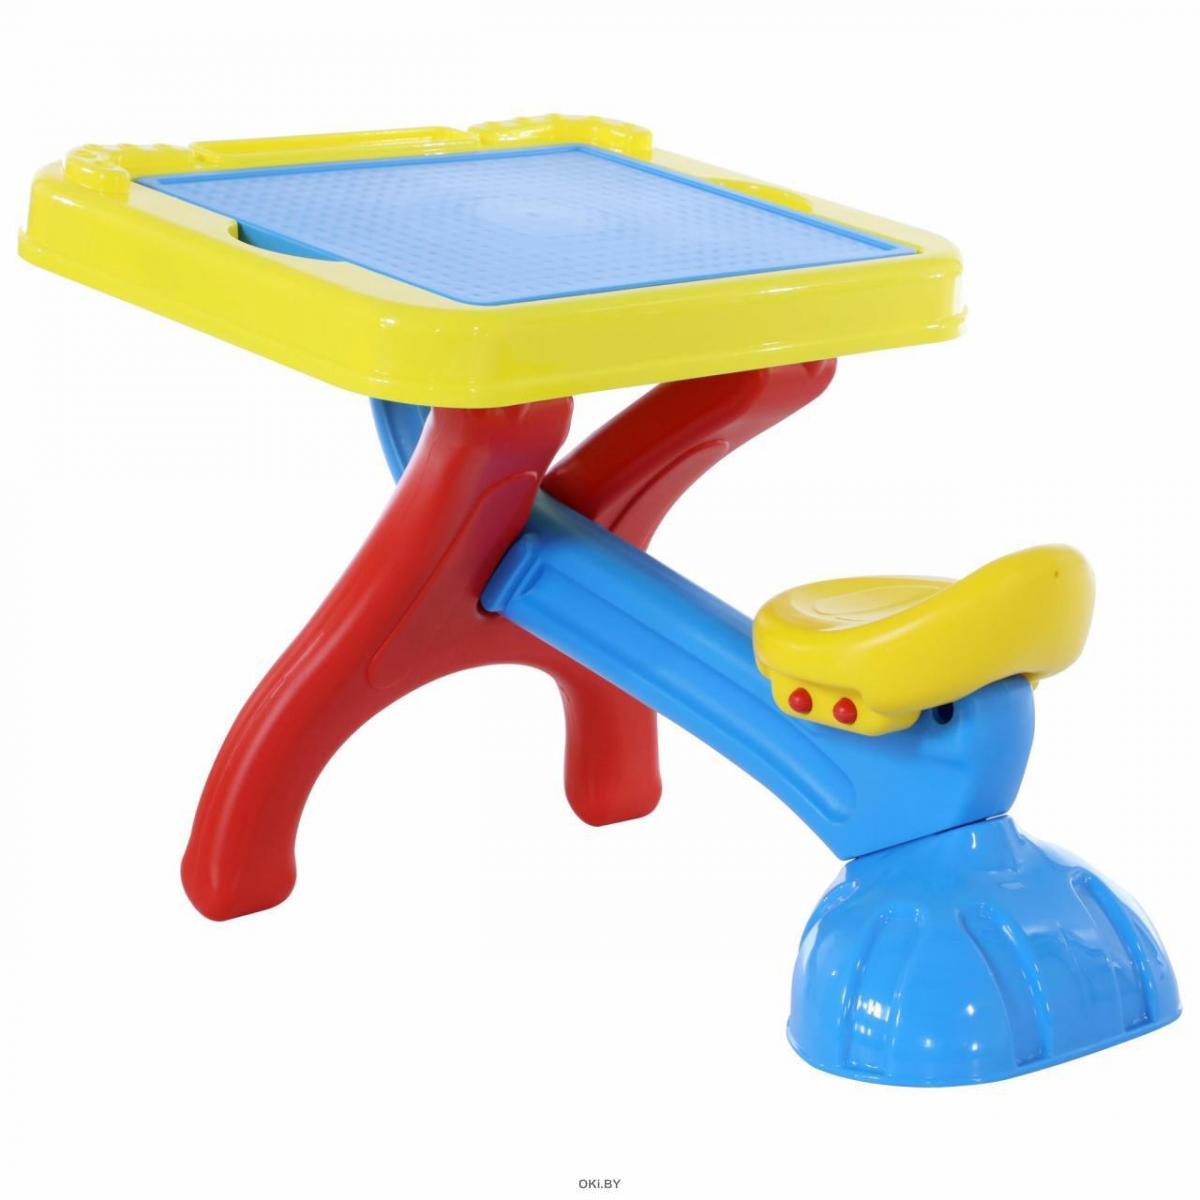 Детский стол со стульчиком полесье